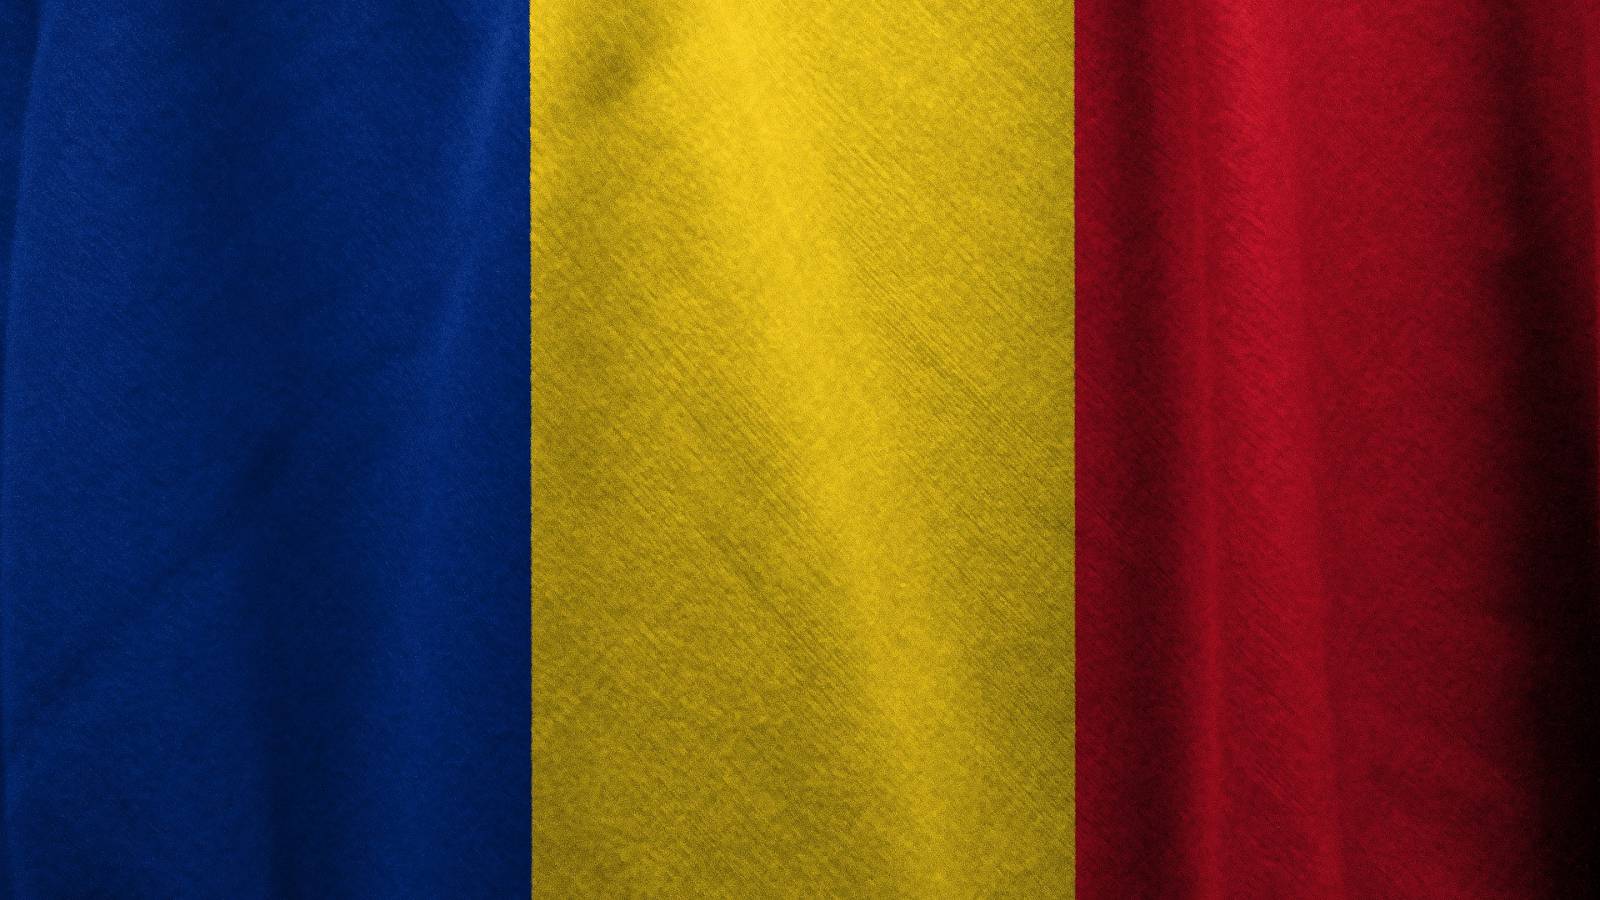 Nowy dzień bez śmierci spowodowanej przez Covid-19 Rumunia